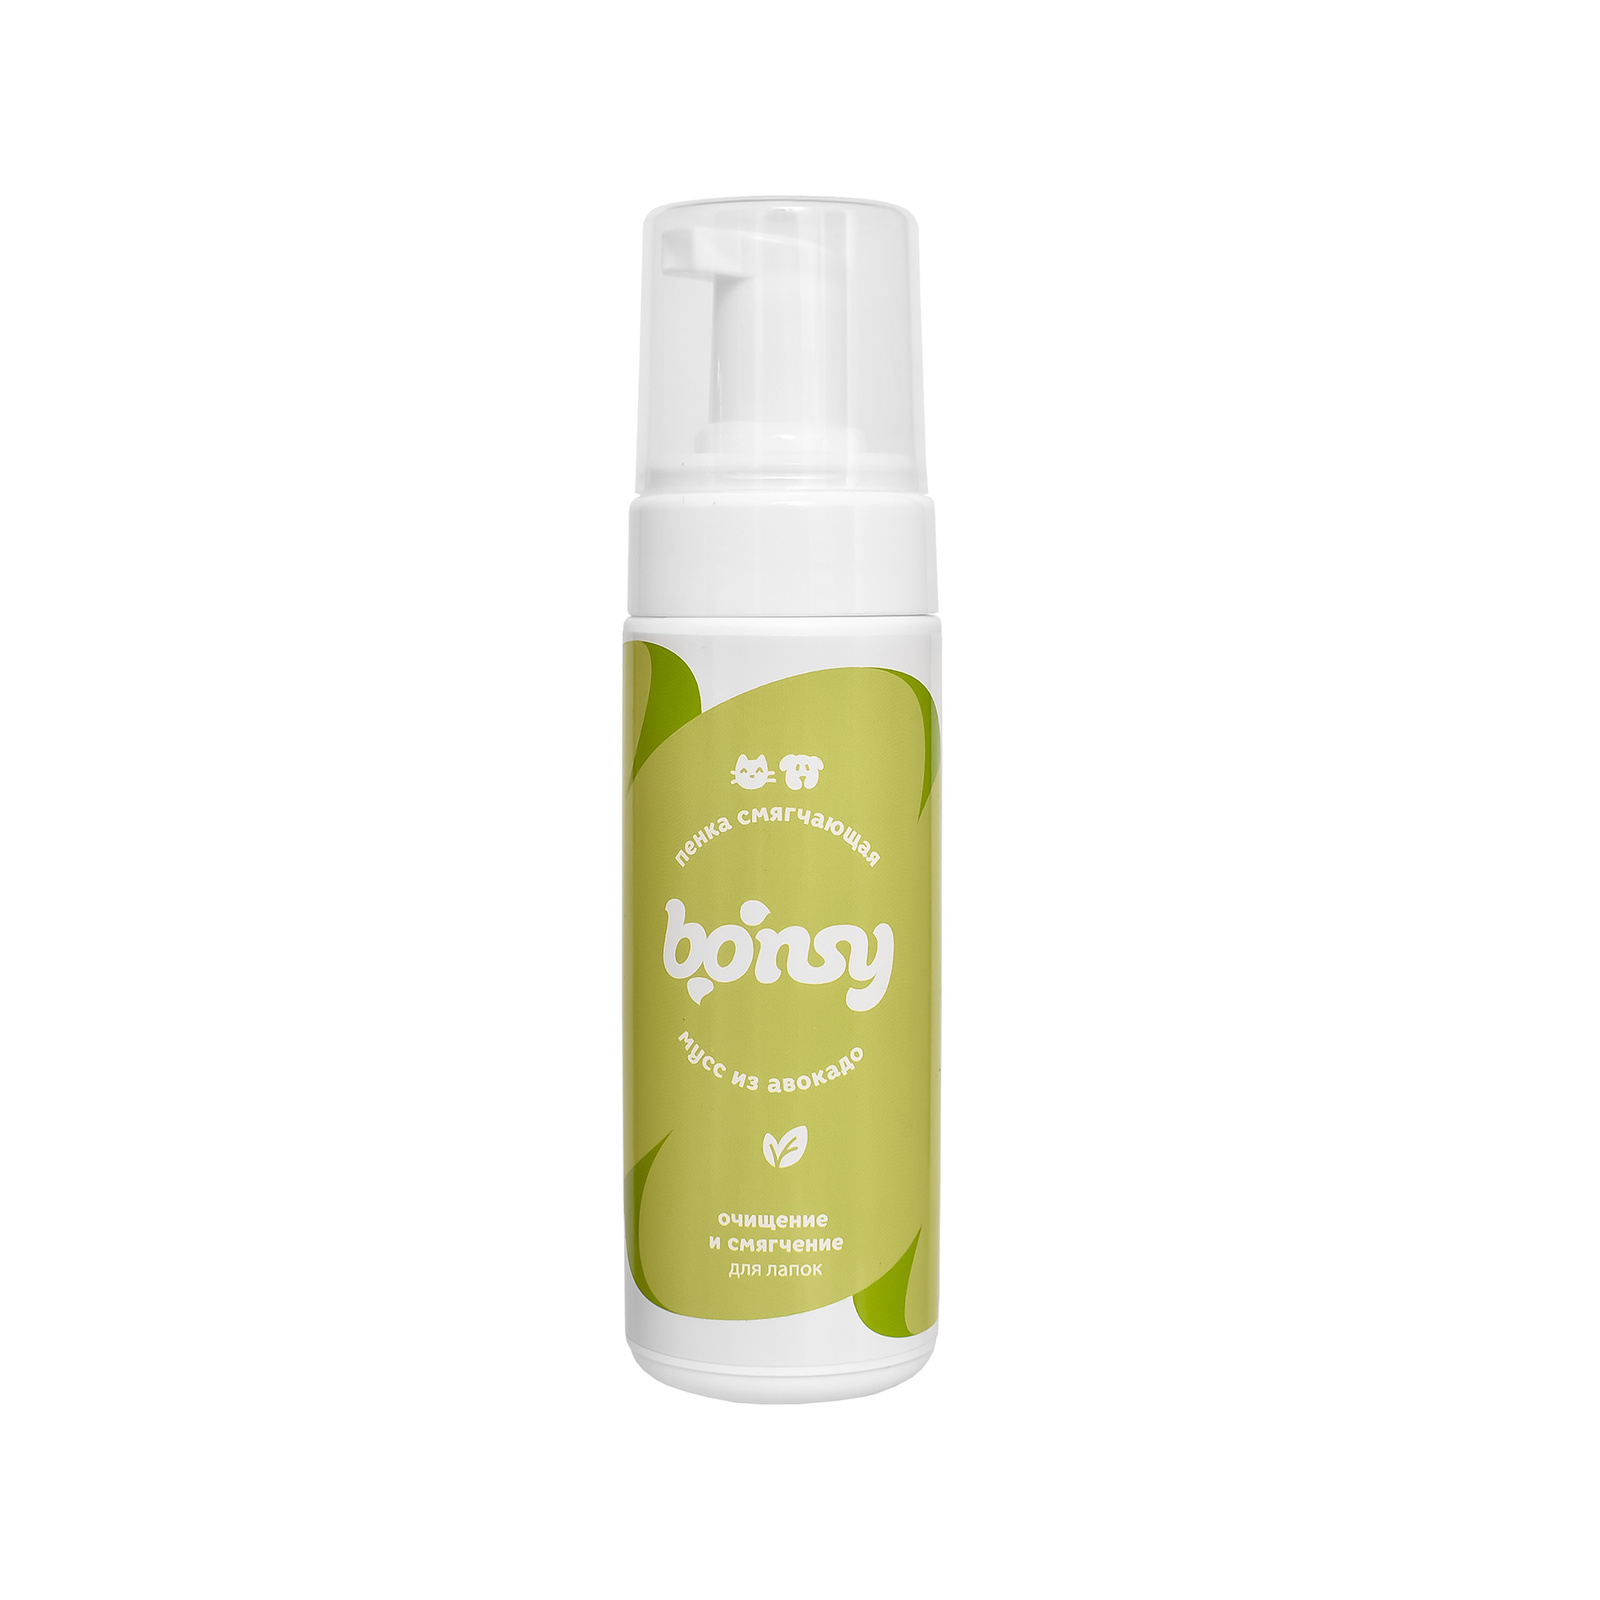 Bonsy Bonsy пенка для лап: очищение и смягчение с ароматом Мусс из авокадо (150 мл) bonsy bonsy мыло для лап с ароматом апельсиновый джем фрэш 500 г